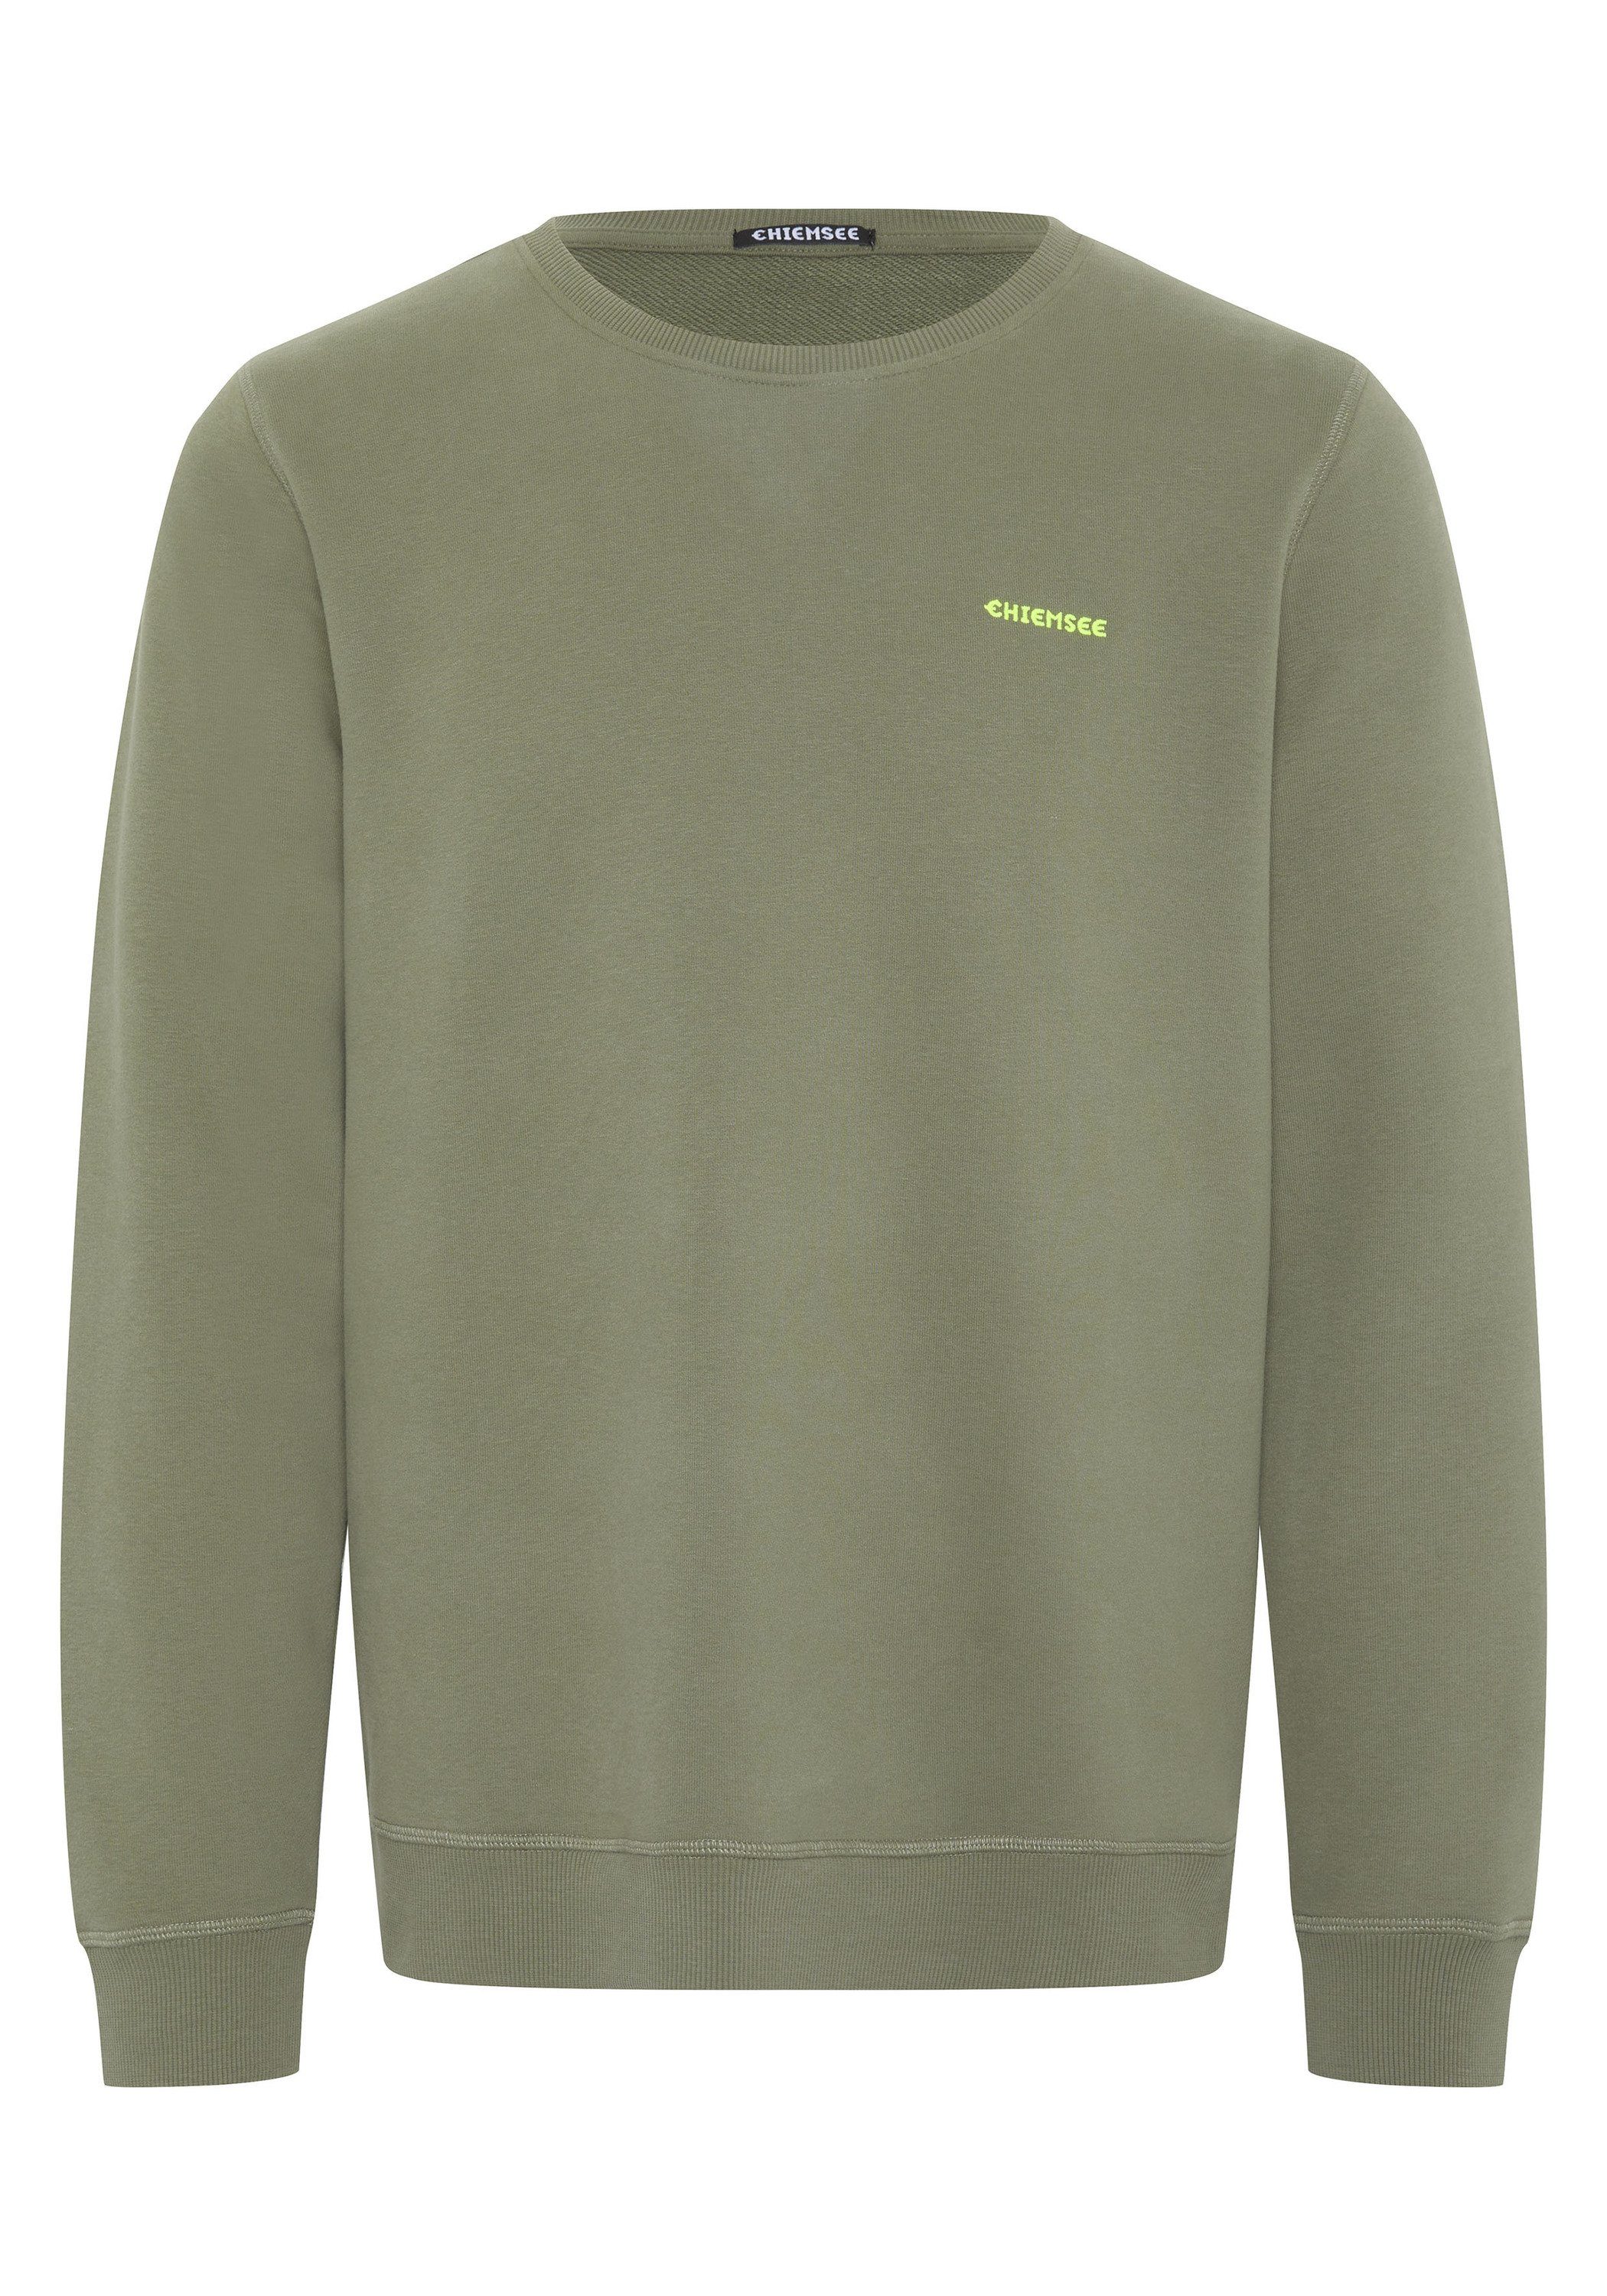 Chiemsee Sweatshirt Sweater mit Jumper-Motiv 1 18-0515 Dusty Olive